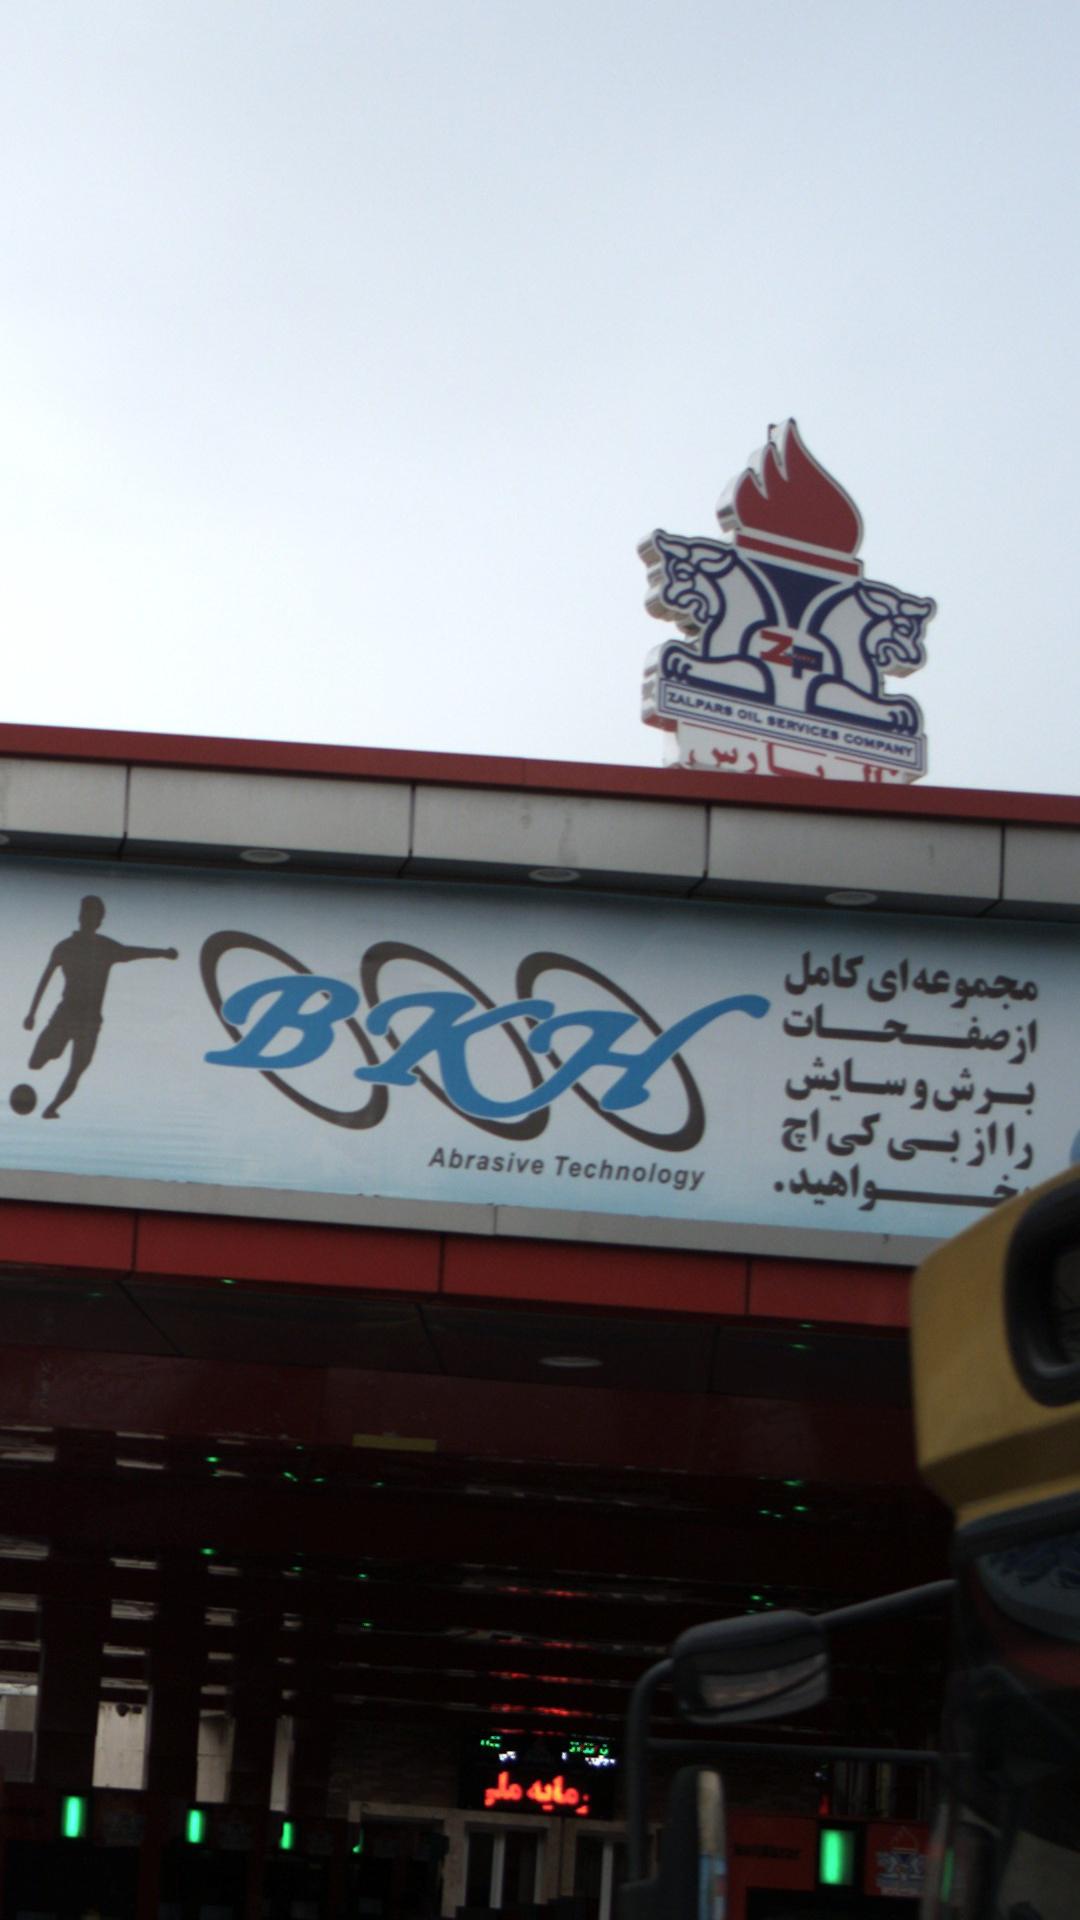 پمپ بنزین وحدت اسلامی شماره ۲۴۱